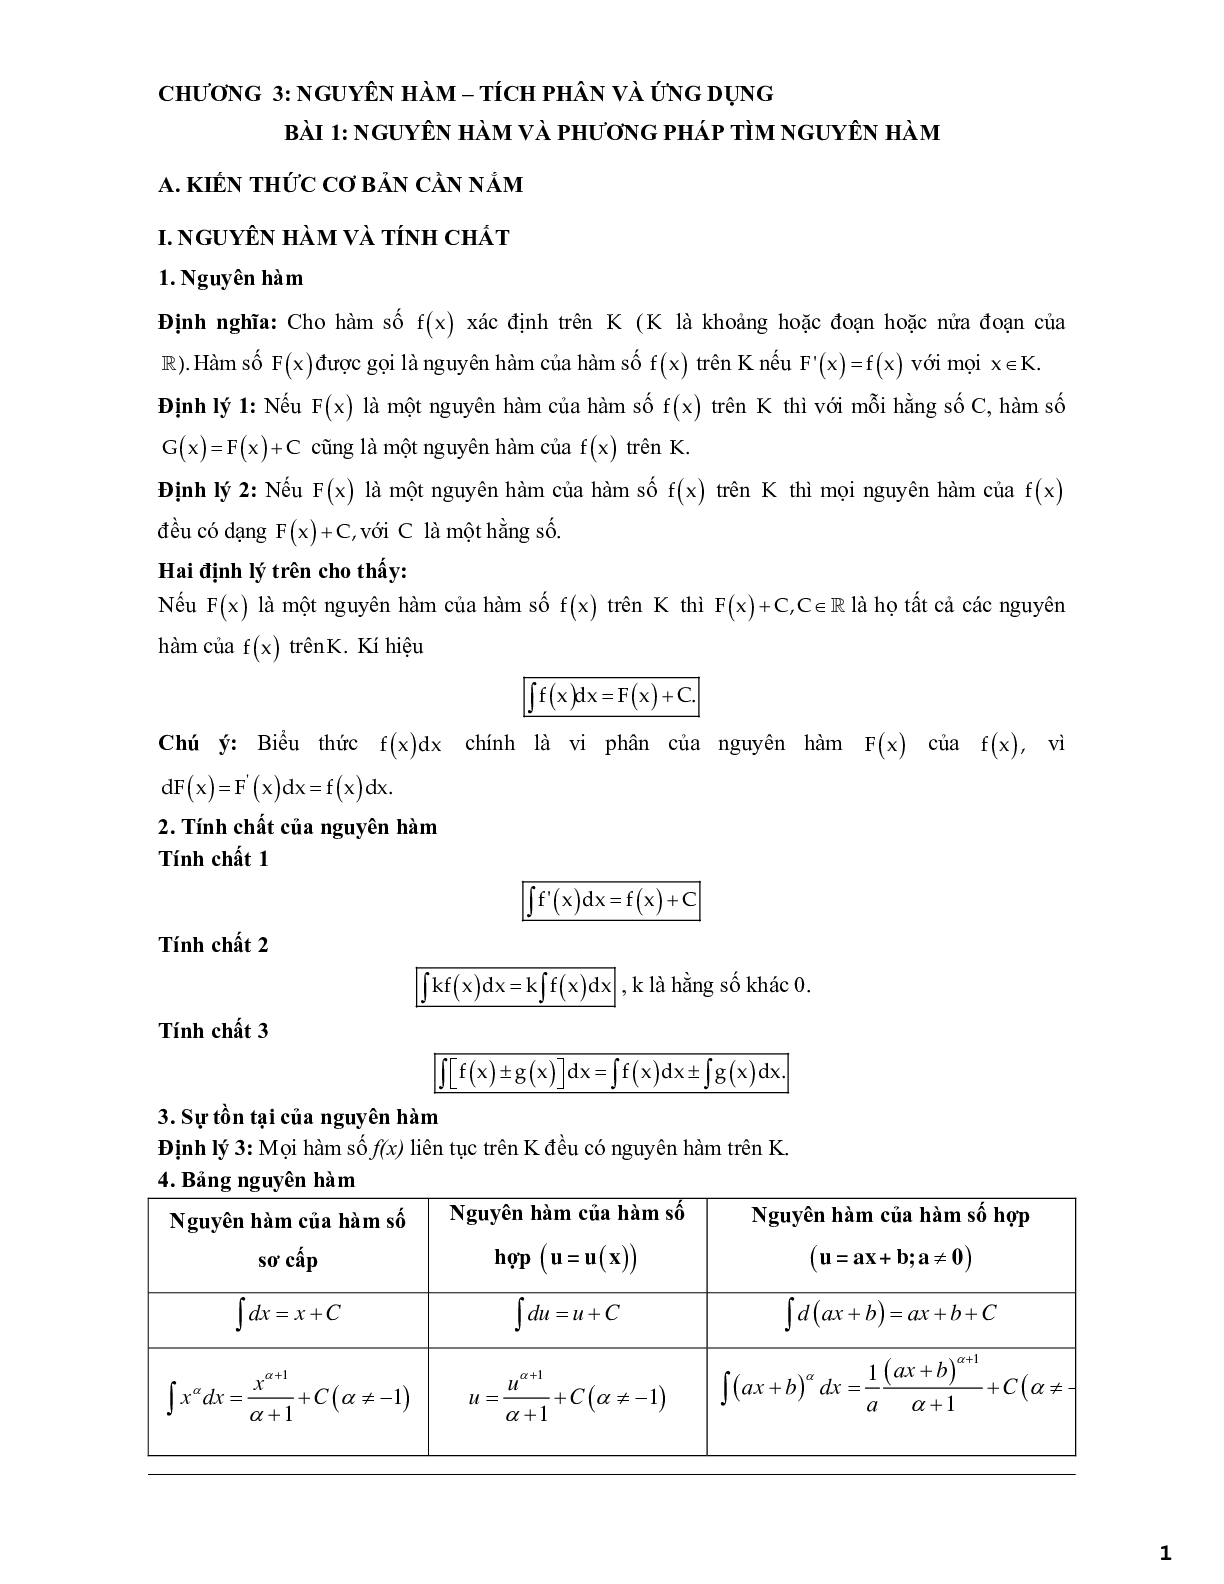 Các dạng bài tập vận dụng cao nguyên hàm tích phân và ứng dụng (trang 1)